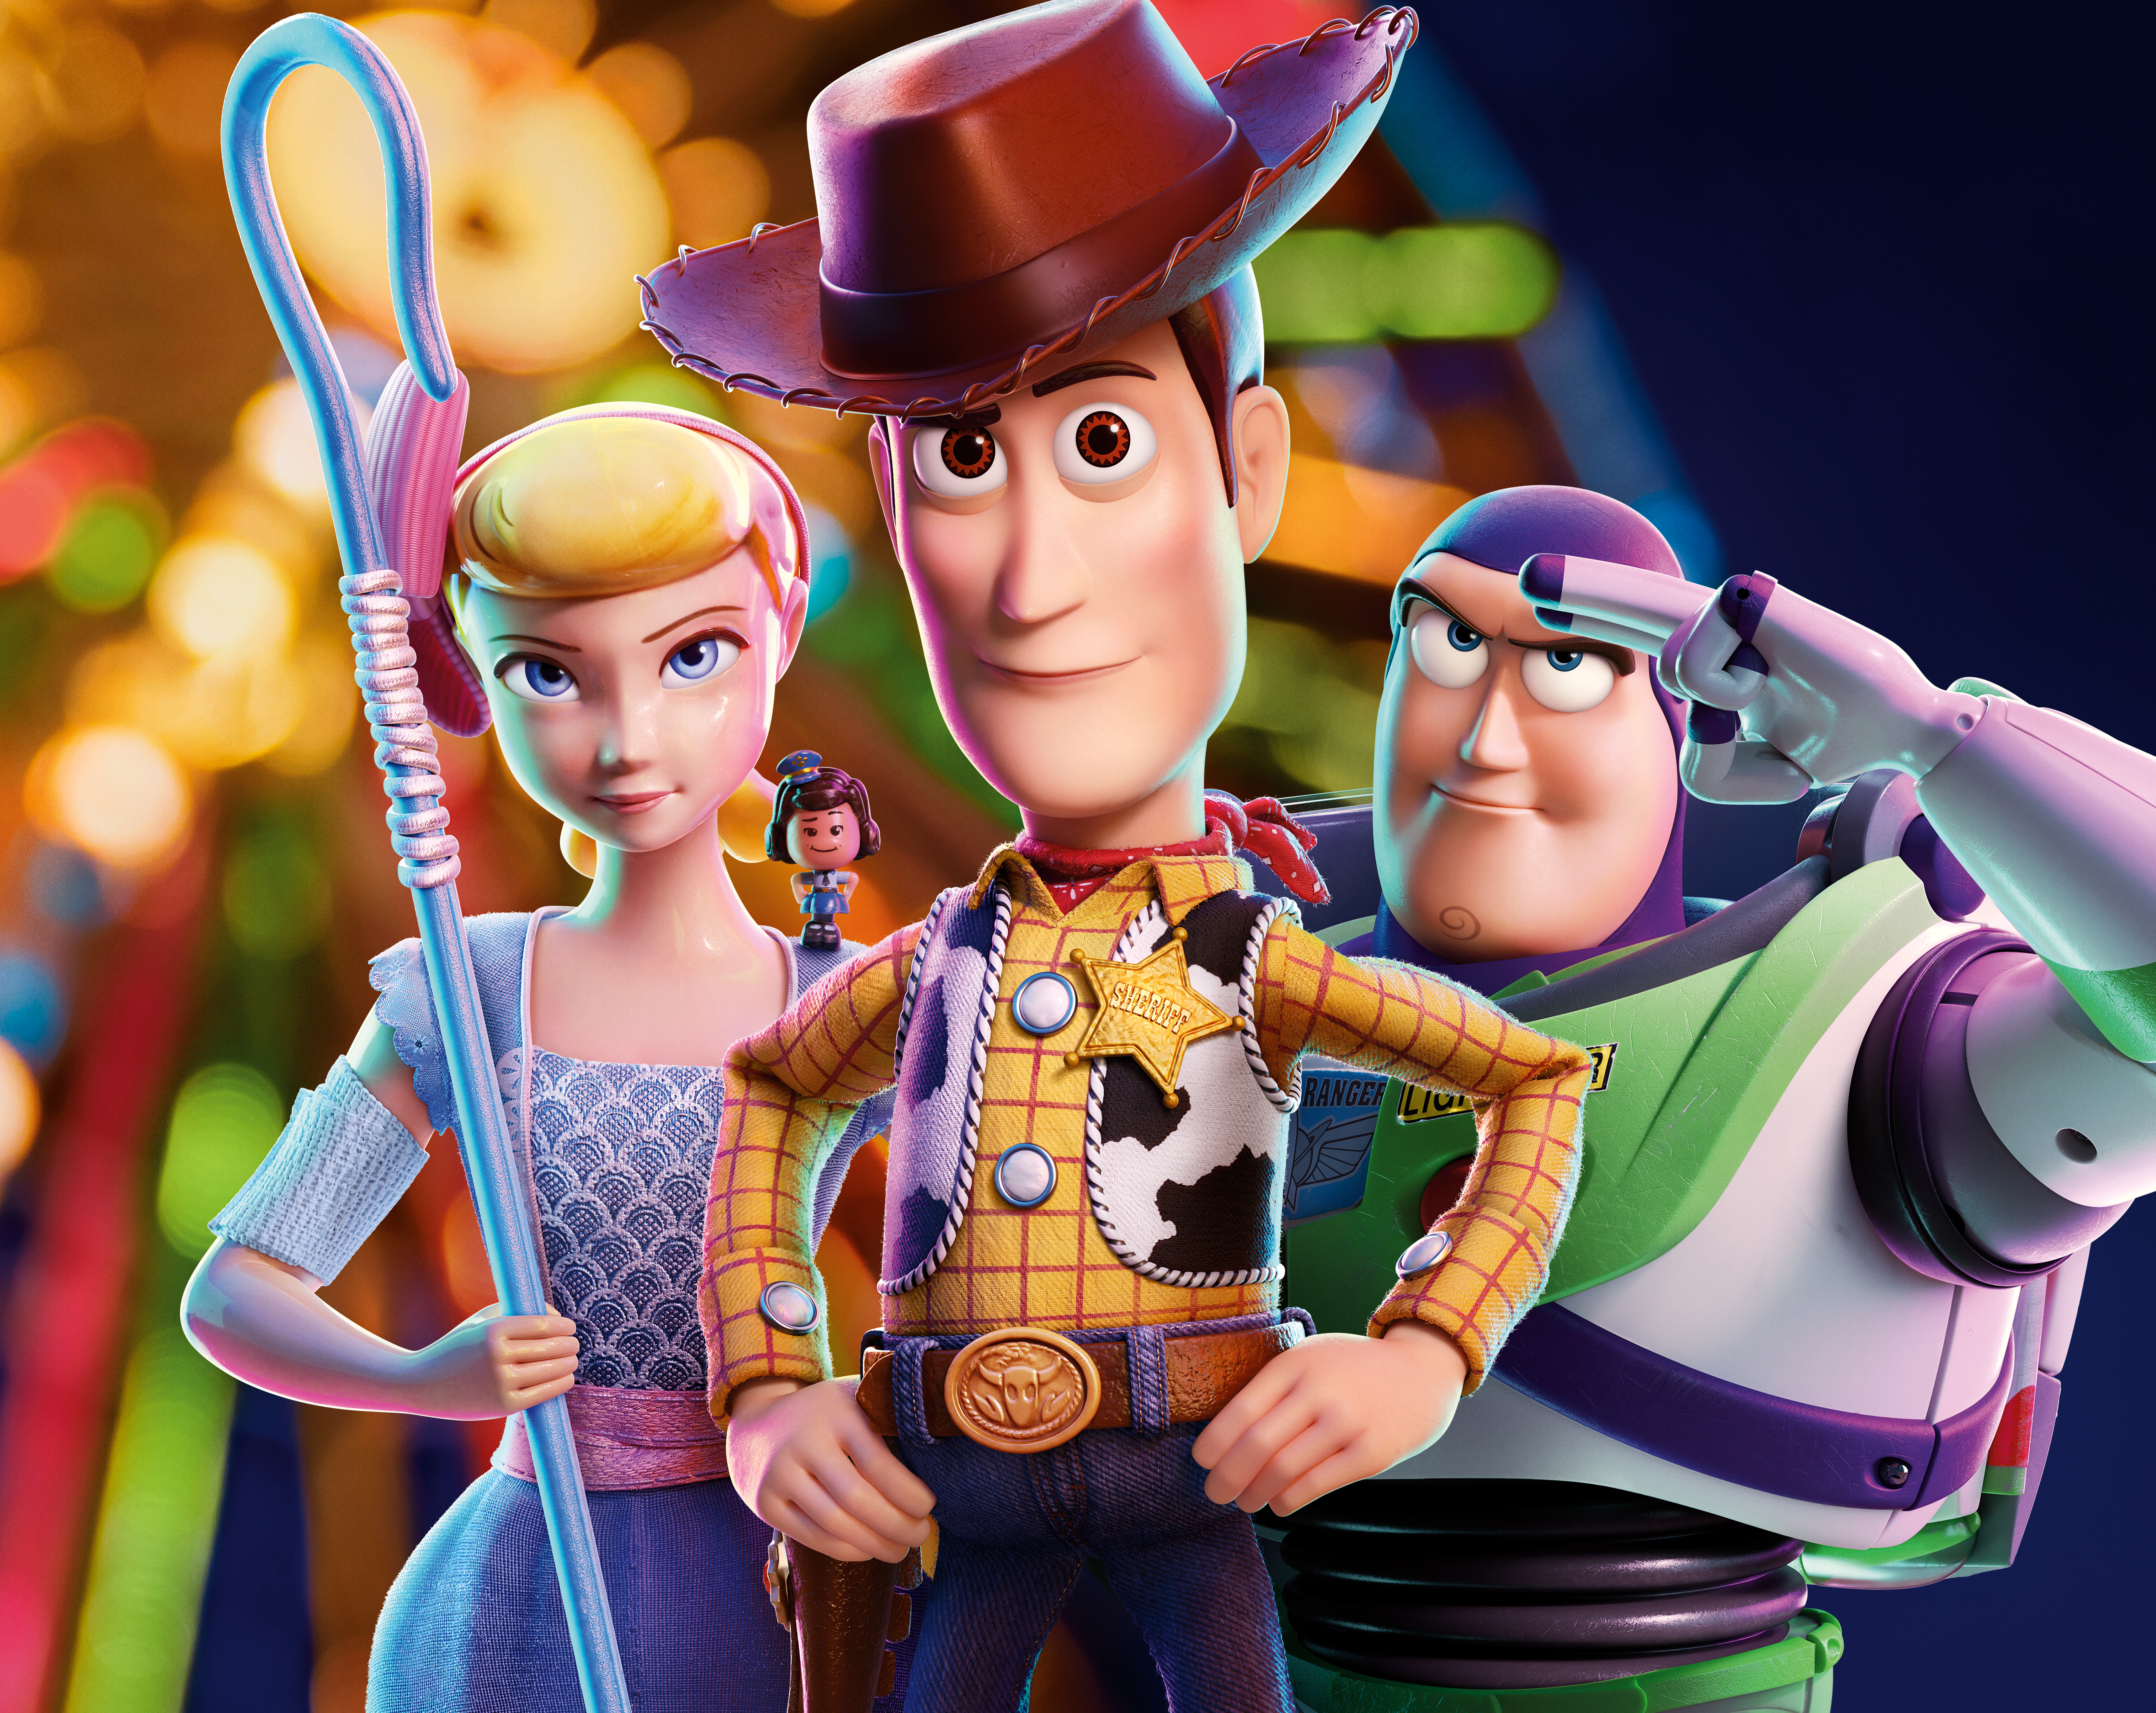 Bo Peep Buzz Lightyear Toy Story 4 Woody Toy Story 5397x4289